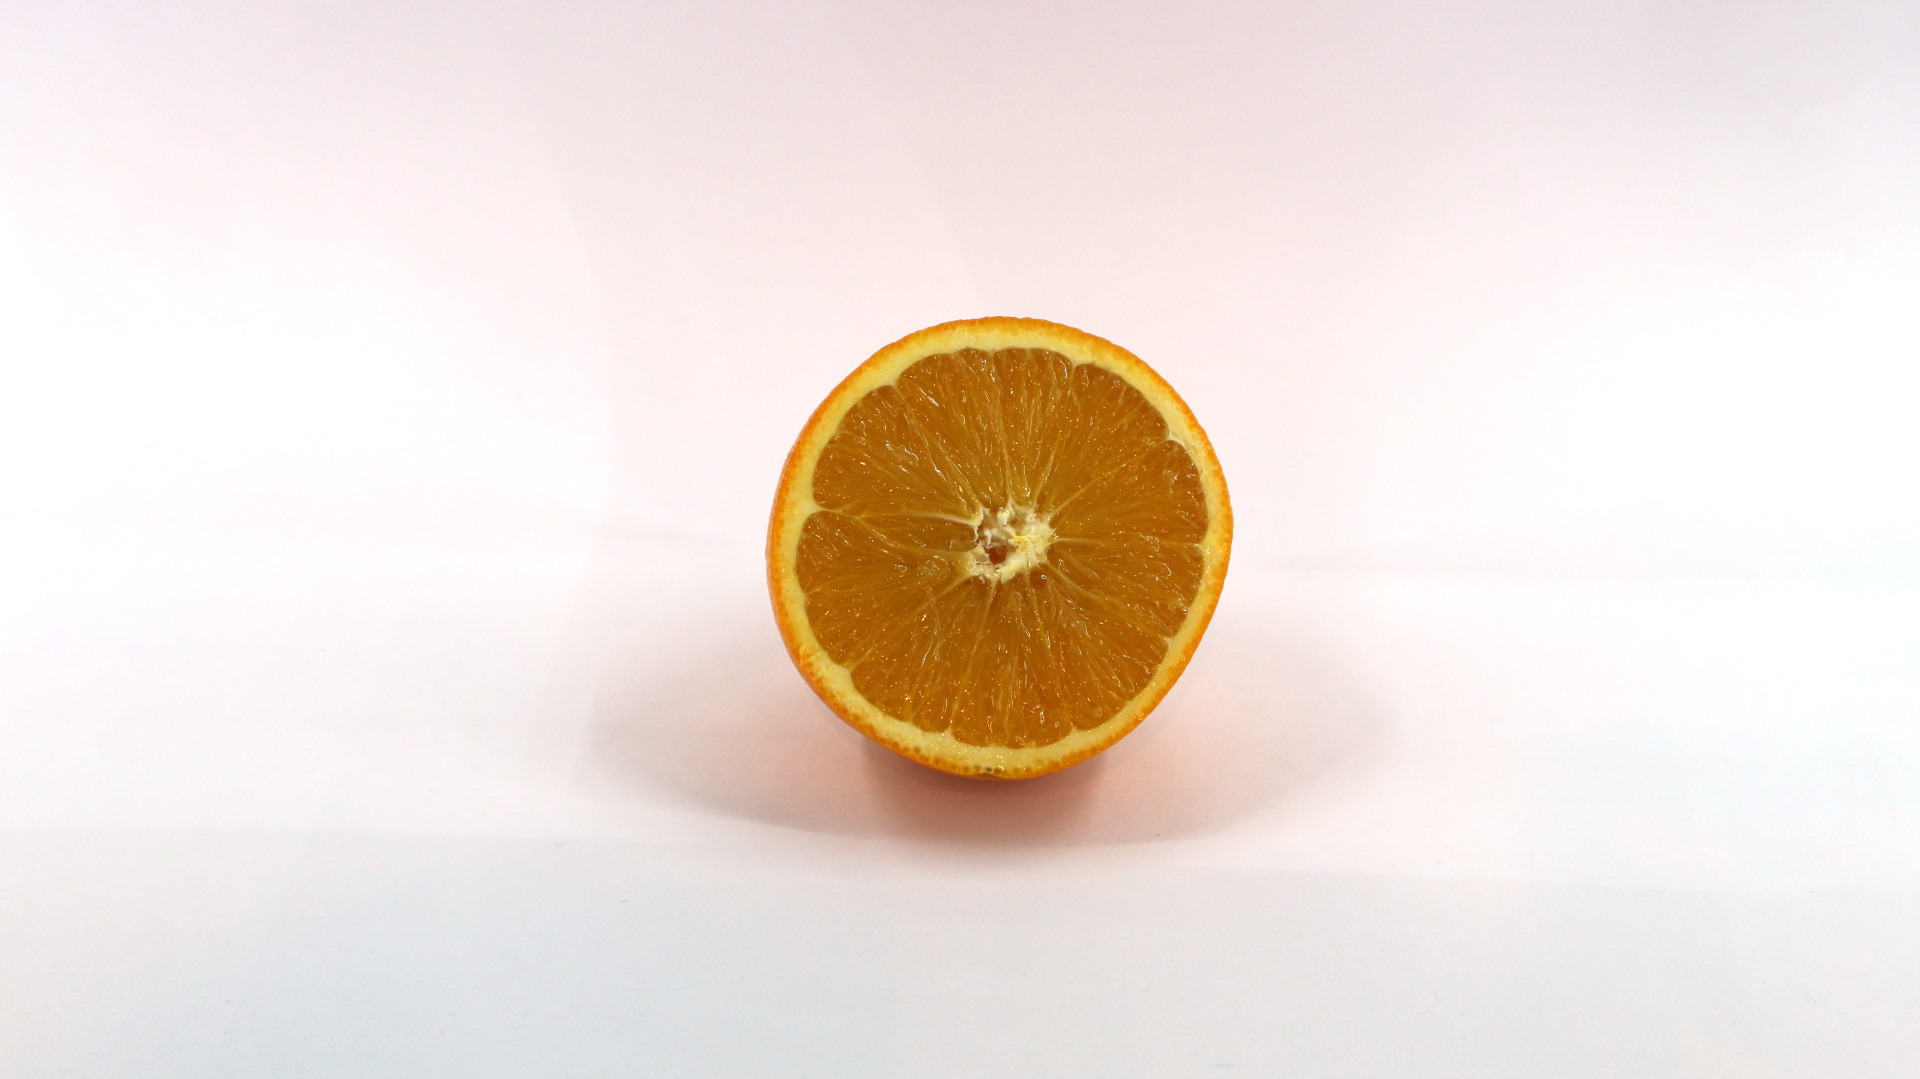 Orange (Citrus × sinensis)